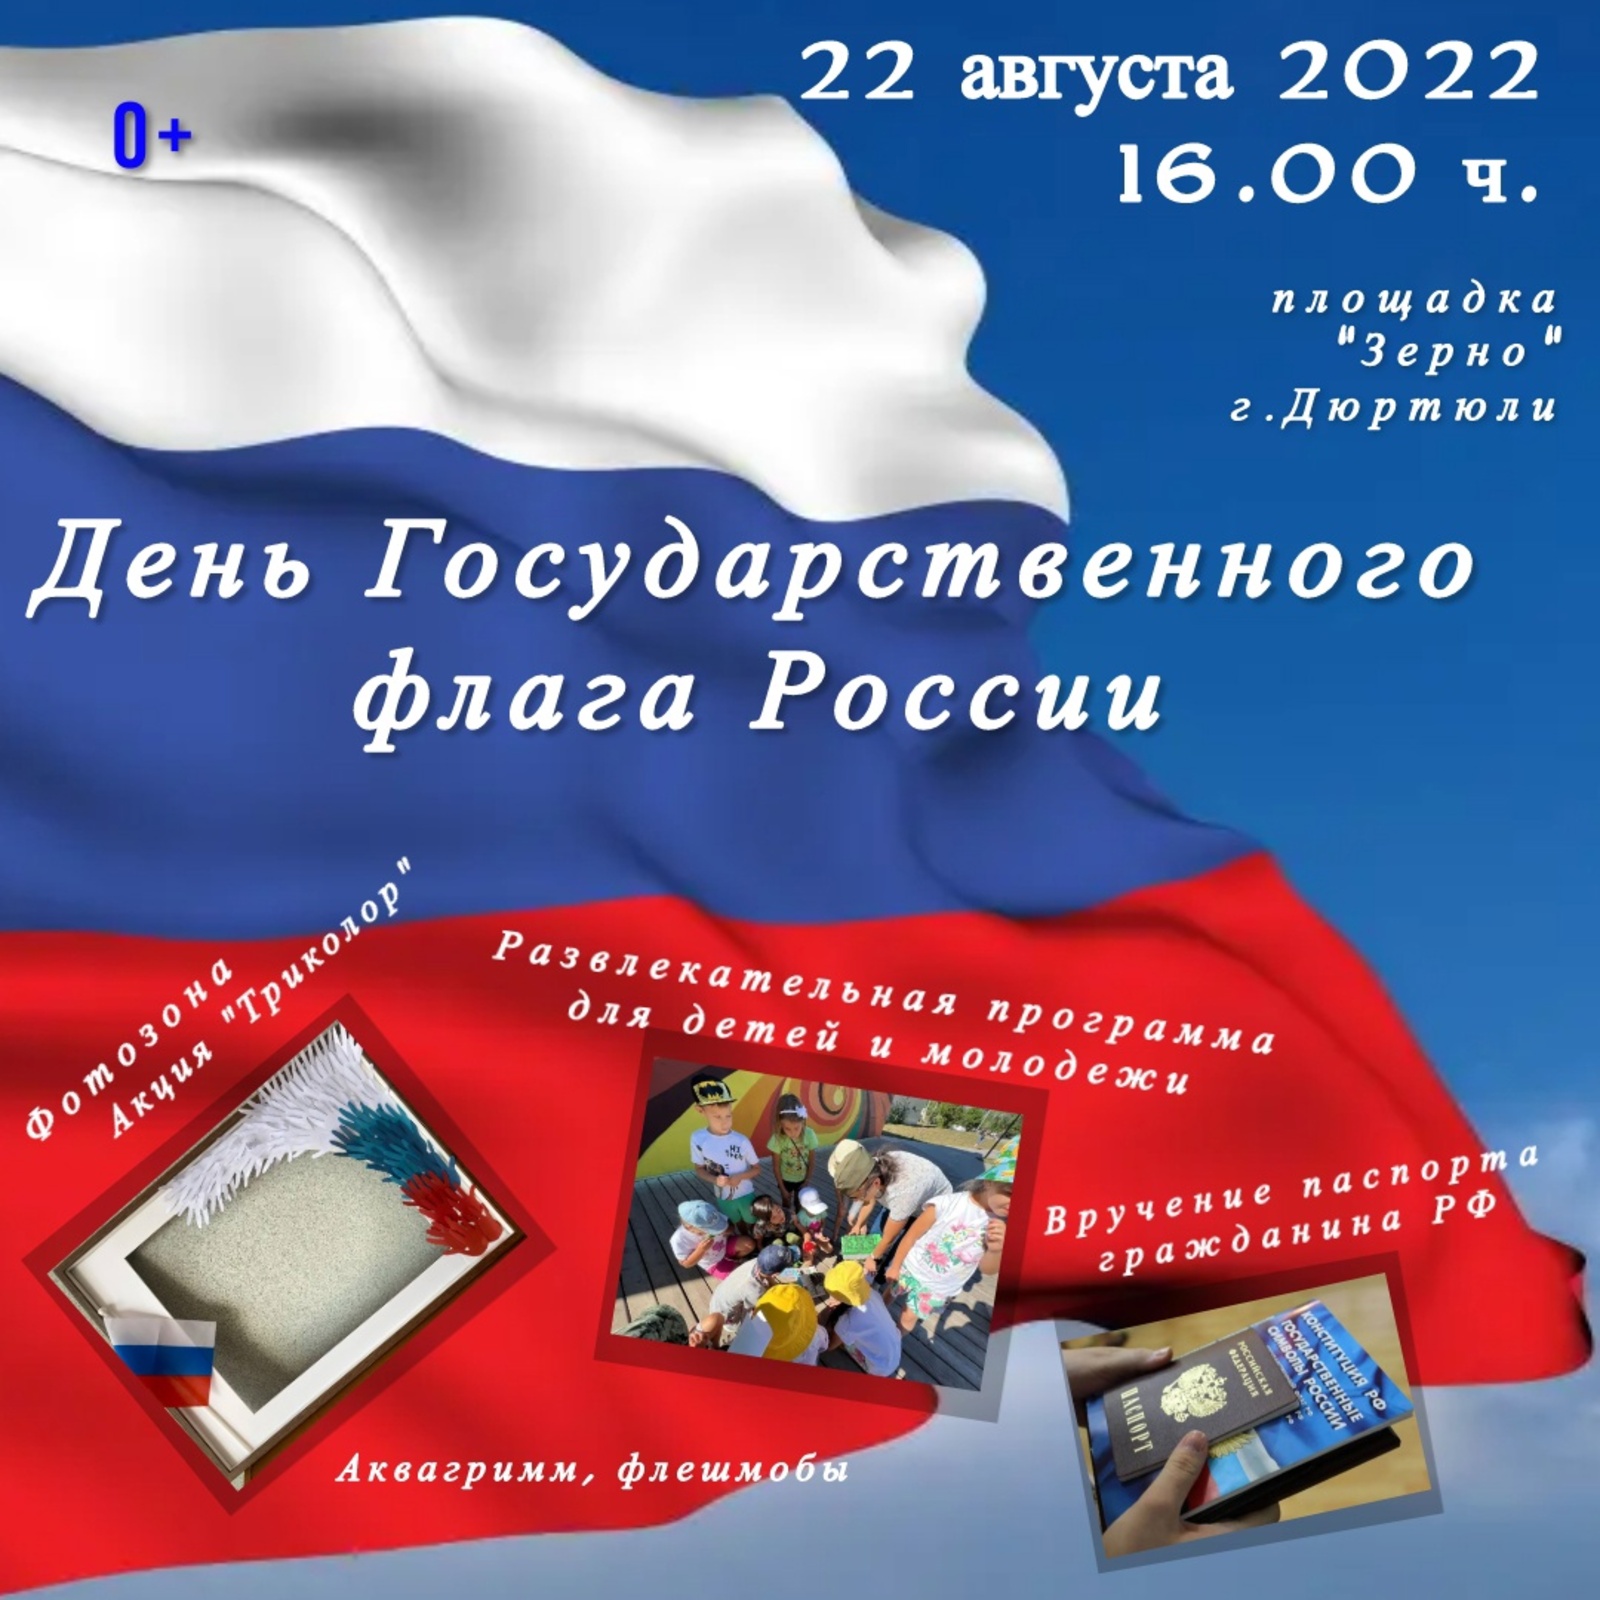 Празднование Дня Государственного флага России в г. Дюртюли